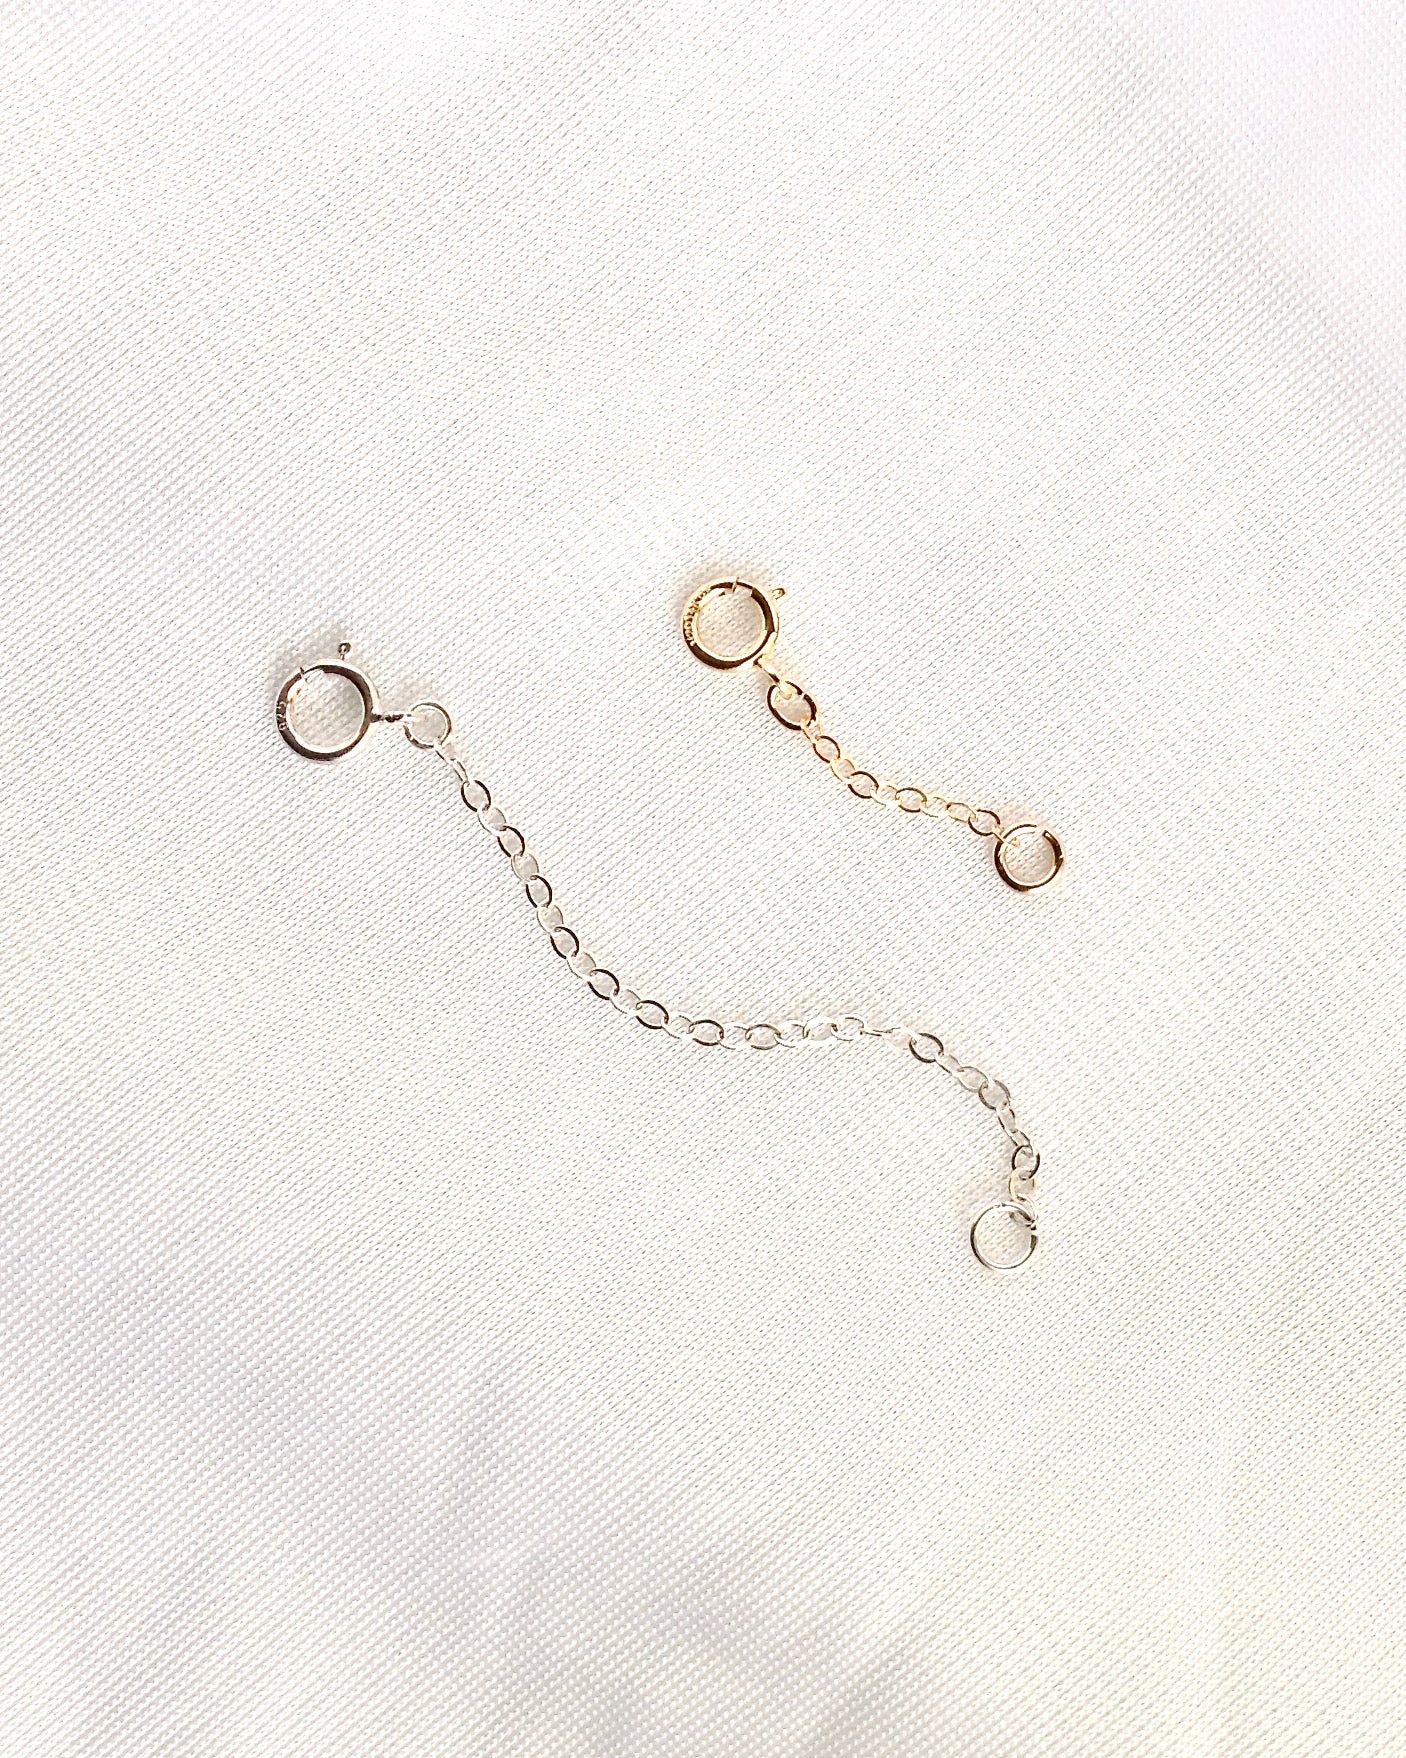 Necklace / Anklet / Bracelet Extender Extension